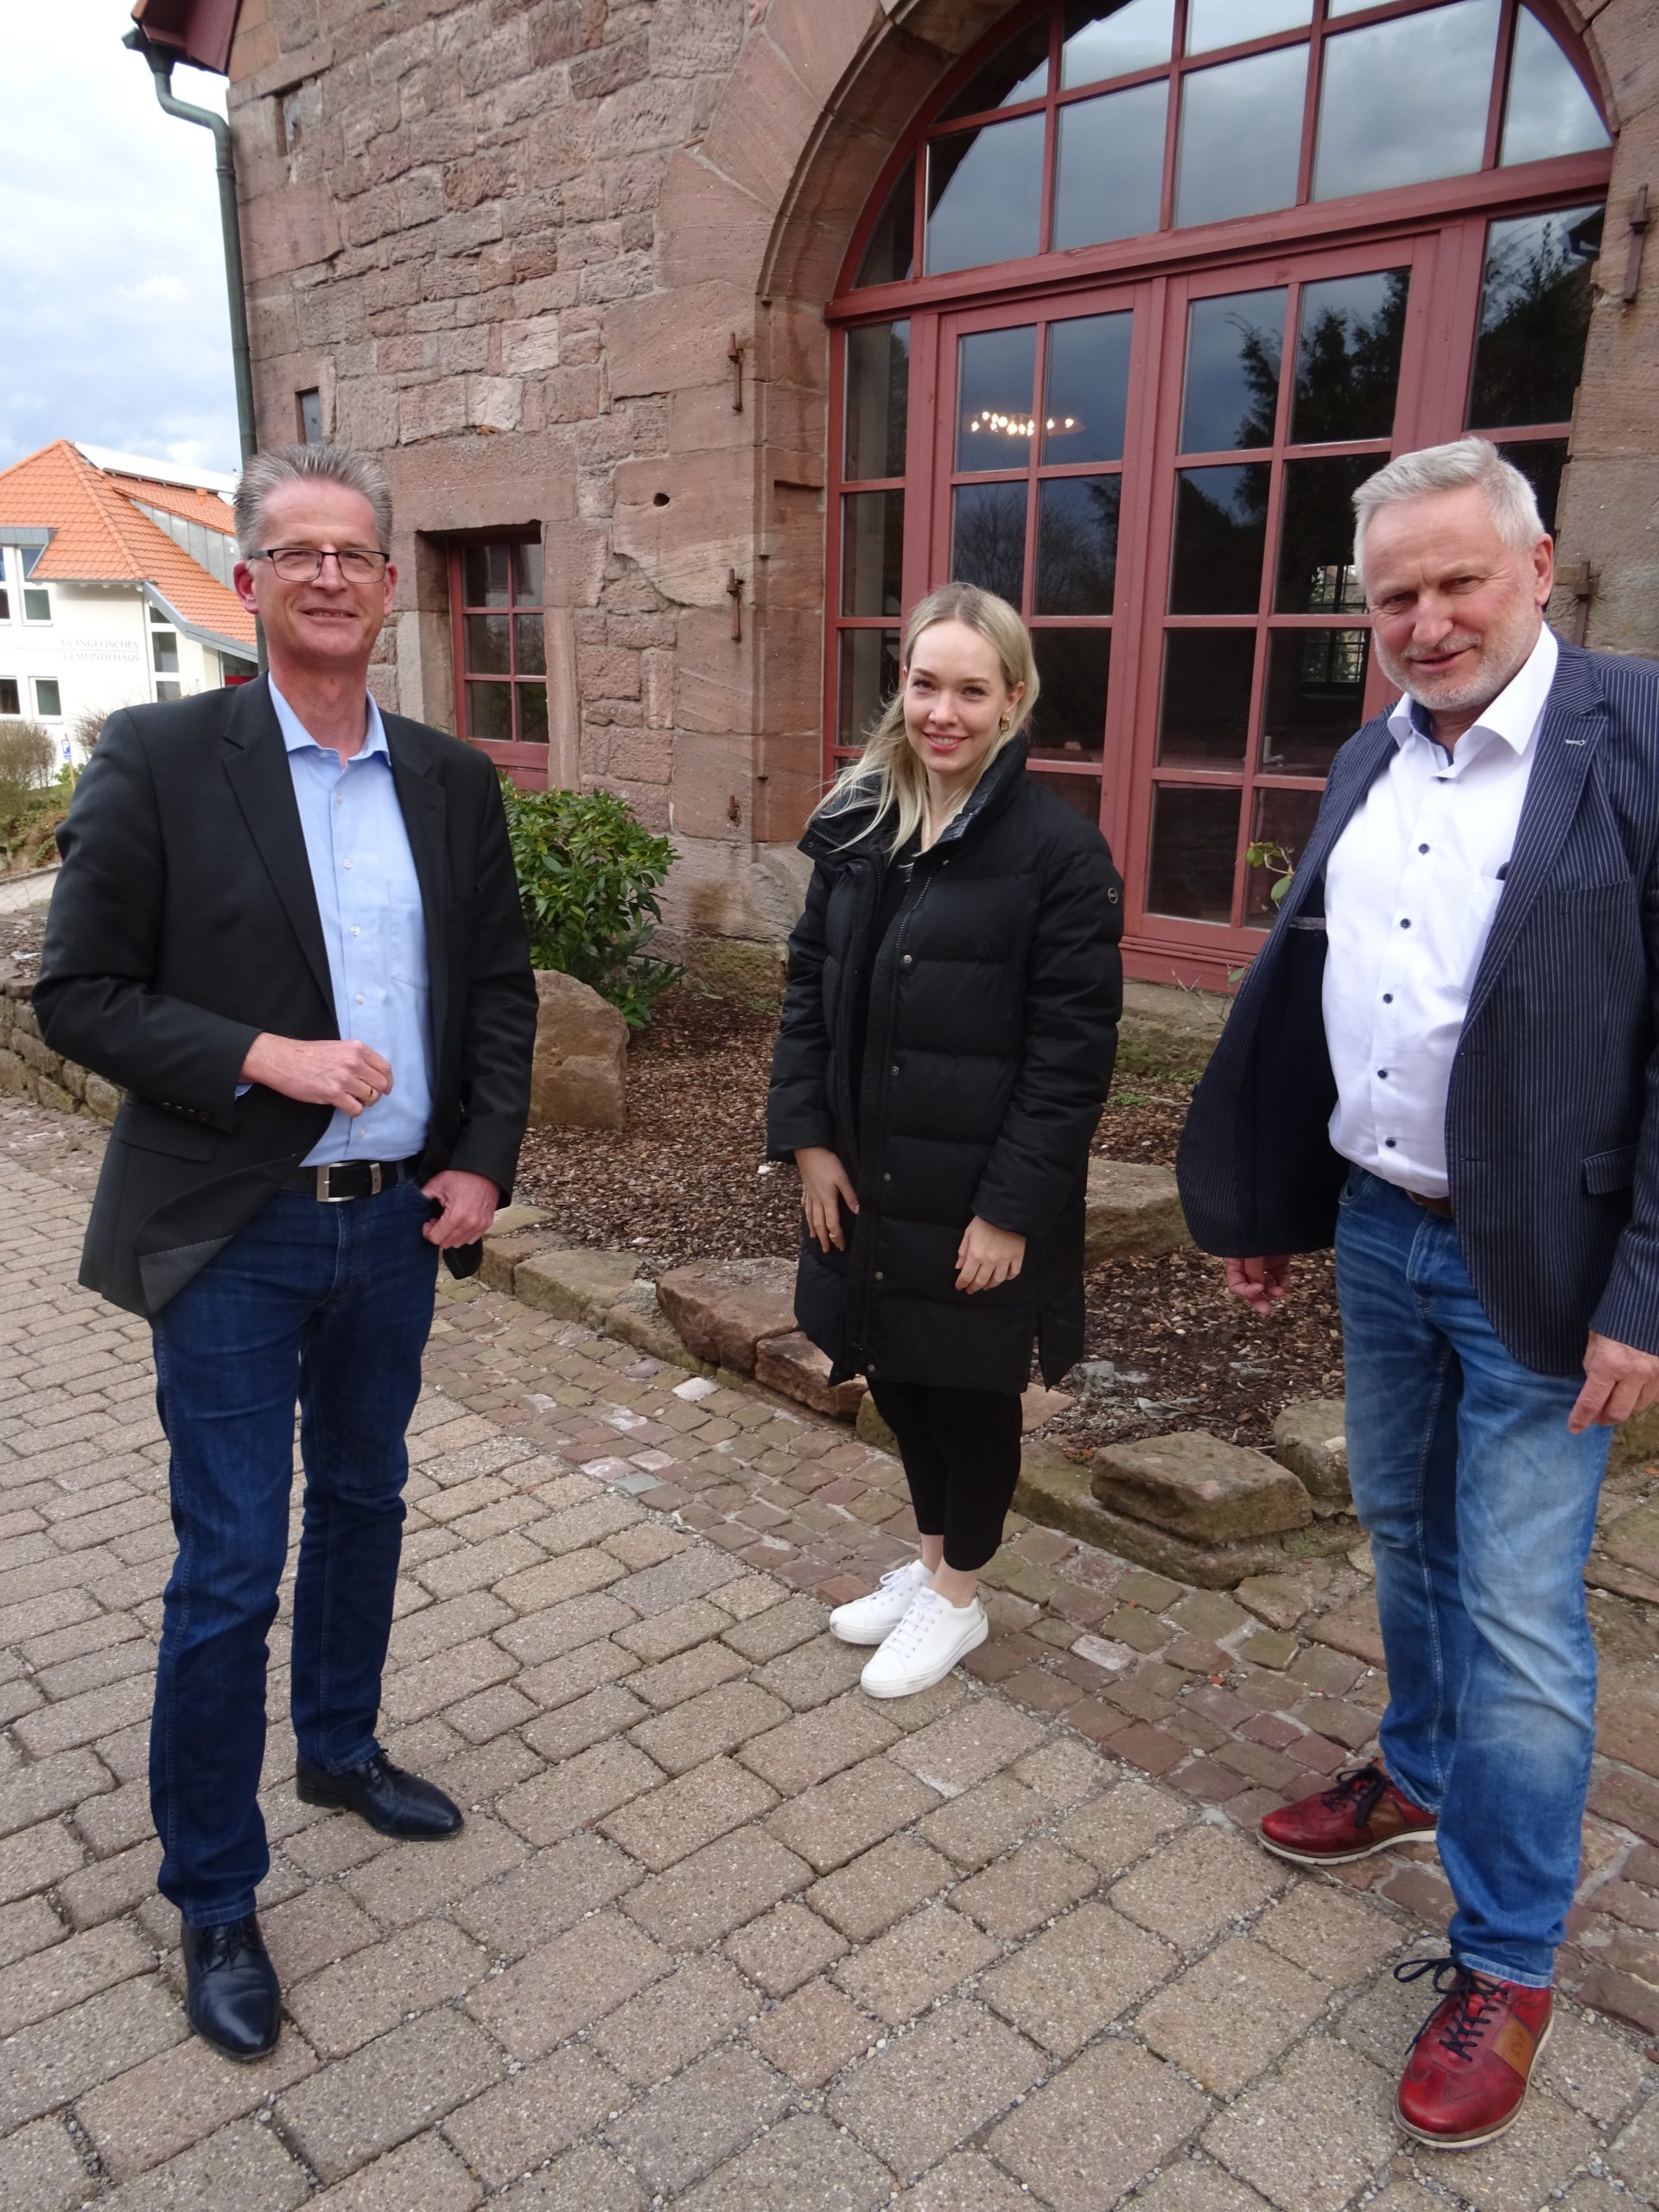 Blenke besucht Bürgermeister Schaack